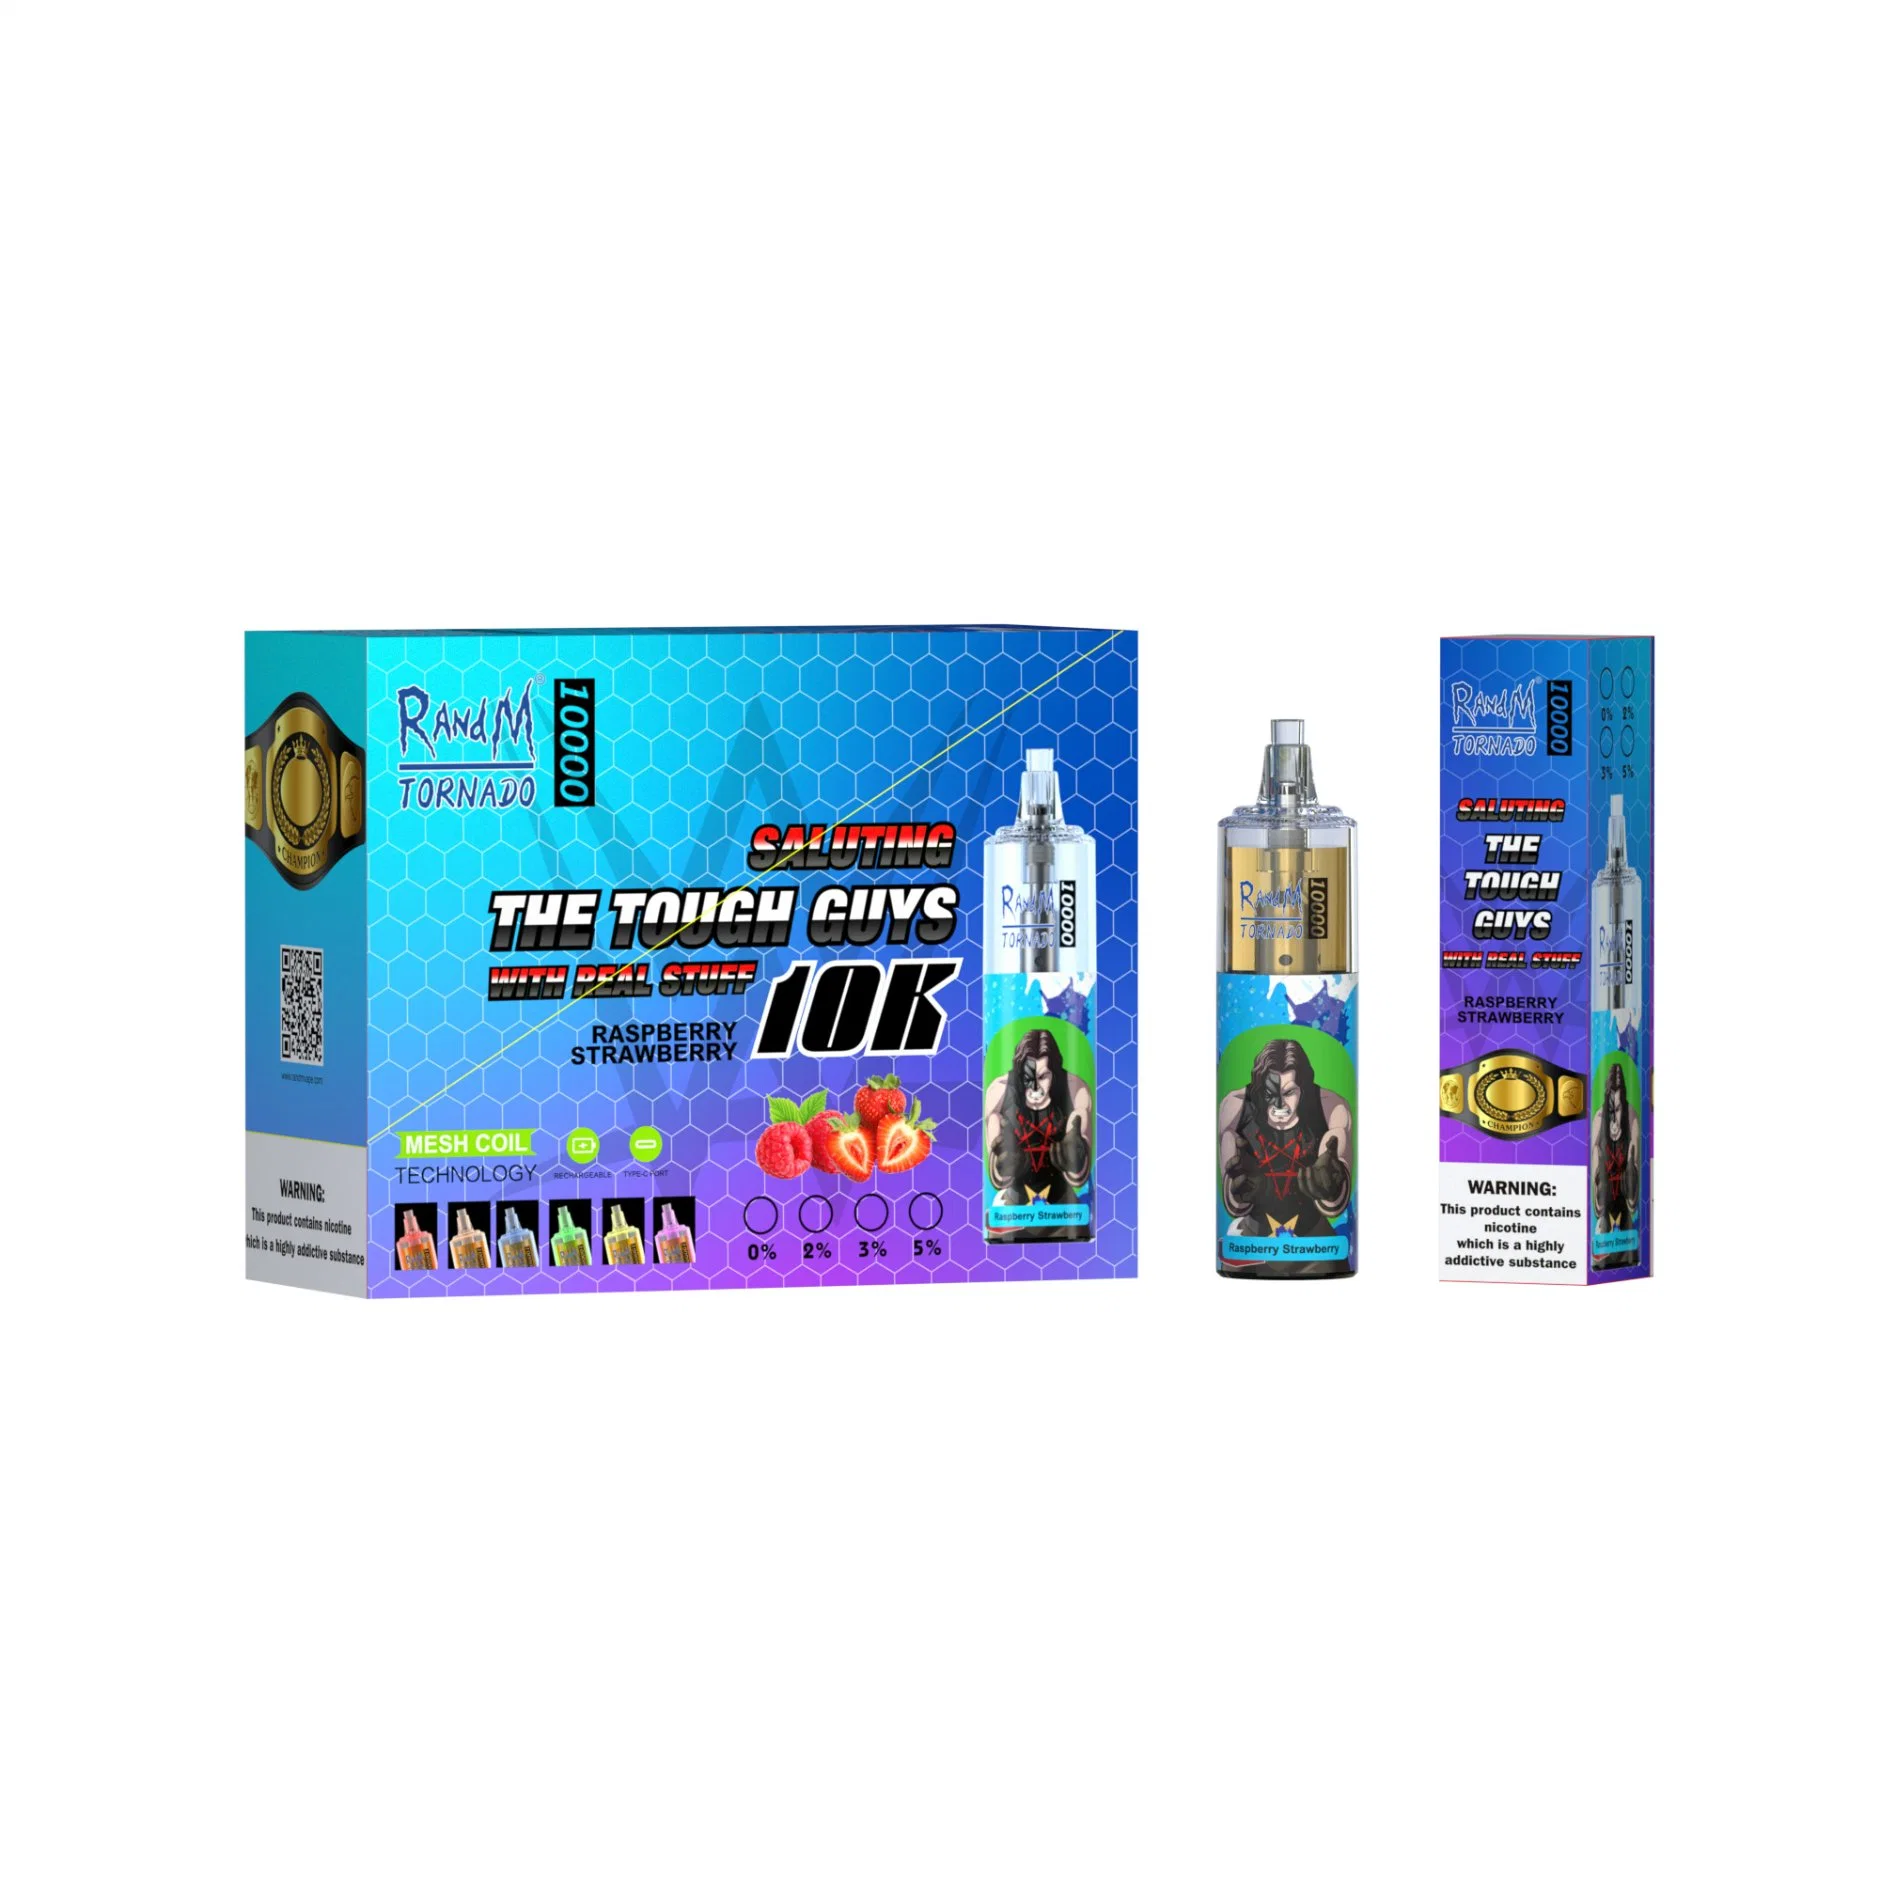 Authentic Randm Tornado 10000 Puffs Disposable/Chargeable Vape Pen E Cigarette Mesh Coil Rechargeable Battery 20ml